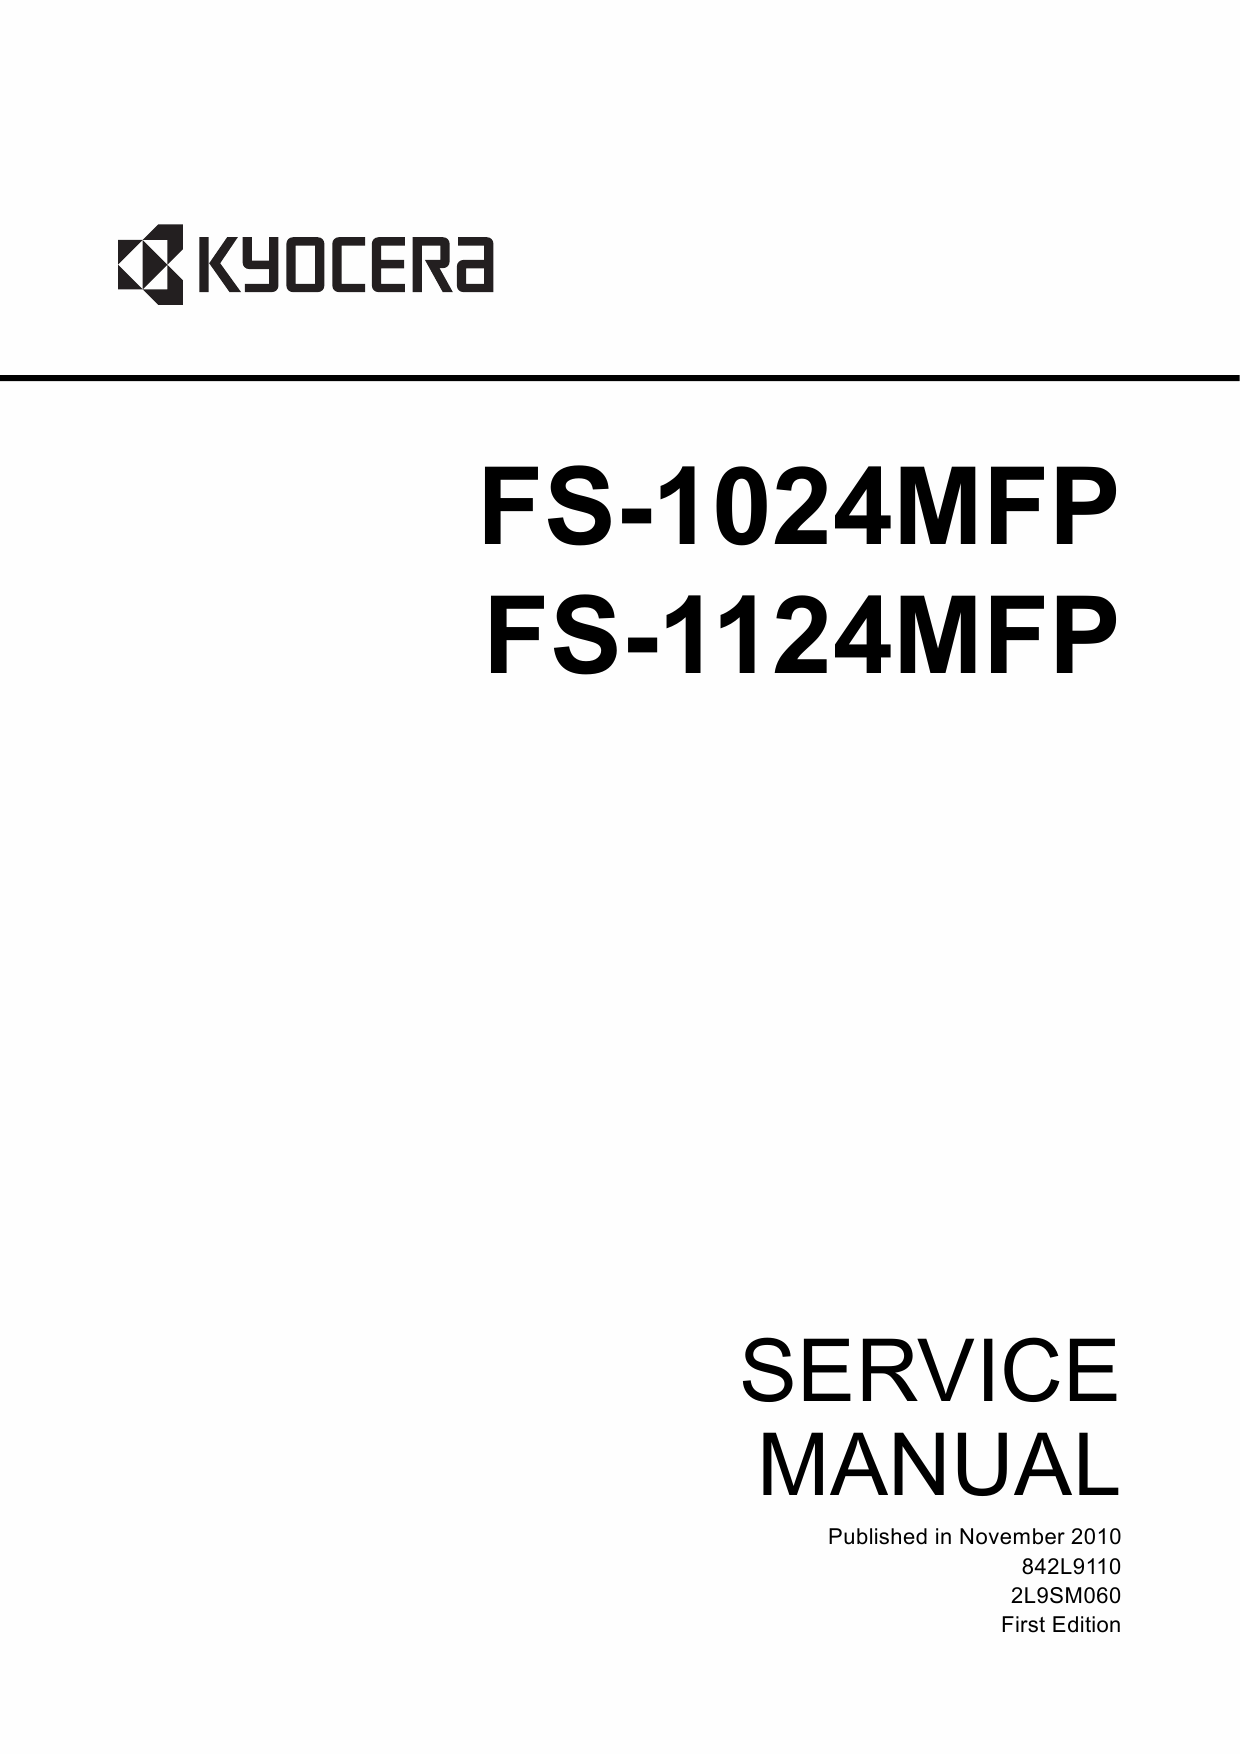 KYOCERA MFP FS-1024MFP 1124MFP Service Manual-1